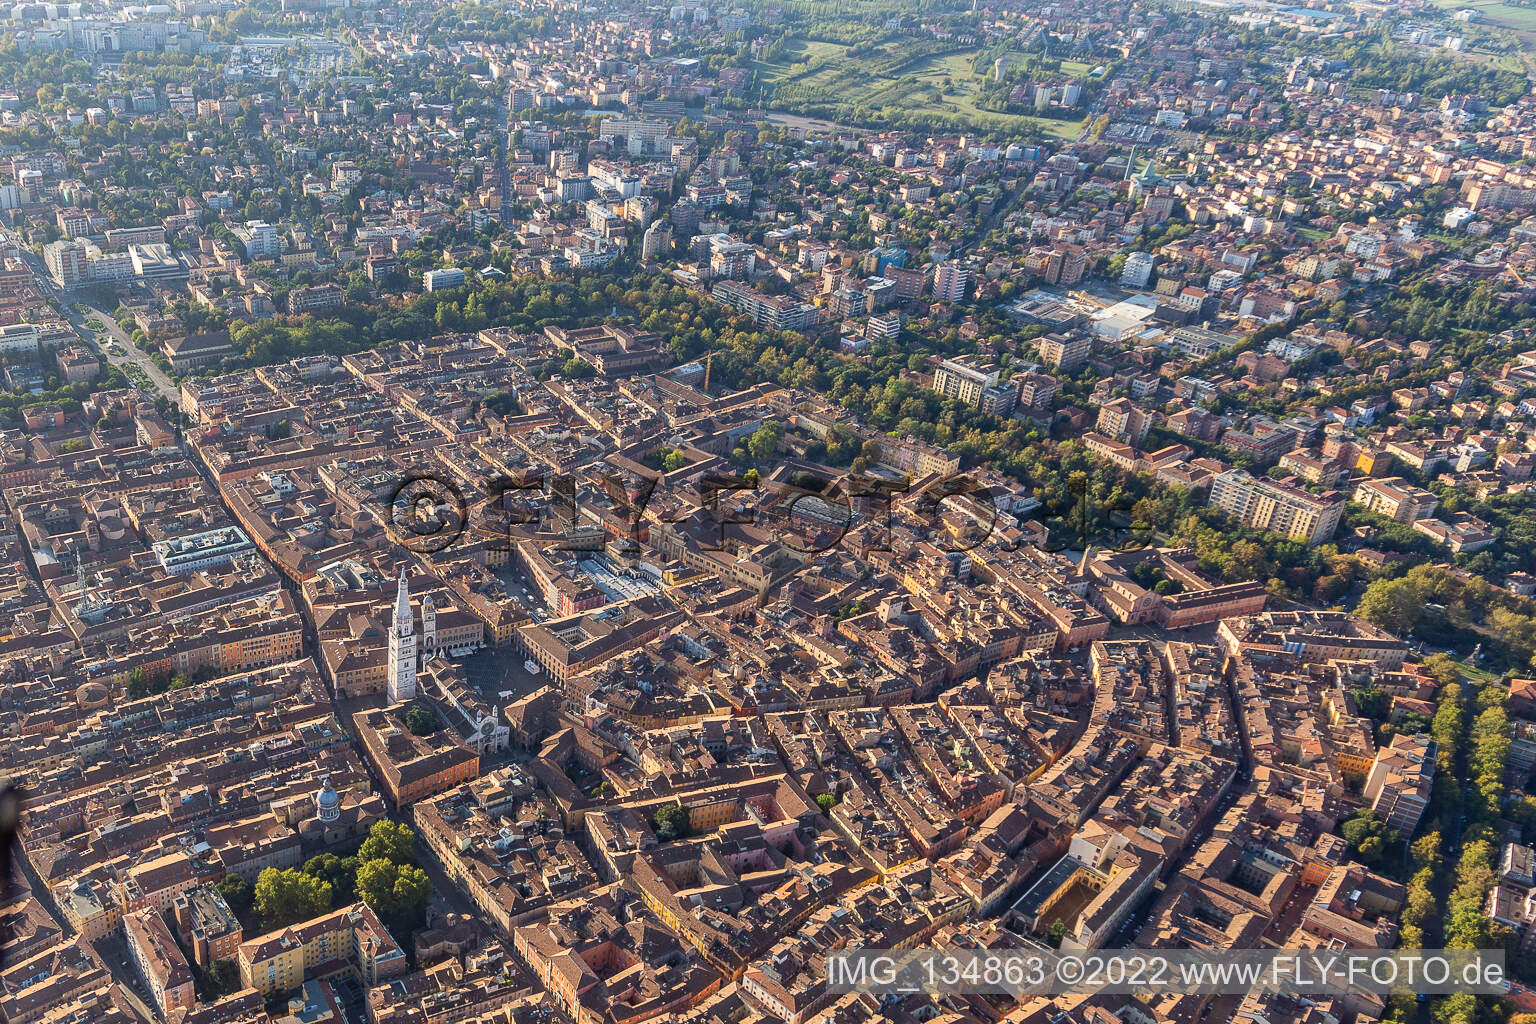 Luftbild von Piazza Roma, Duomo, Piazza Grande in Modena, Italien